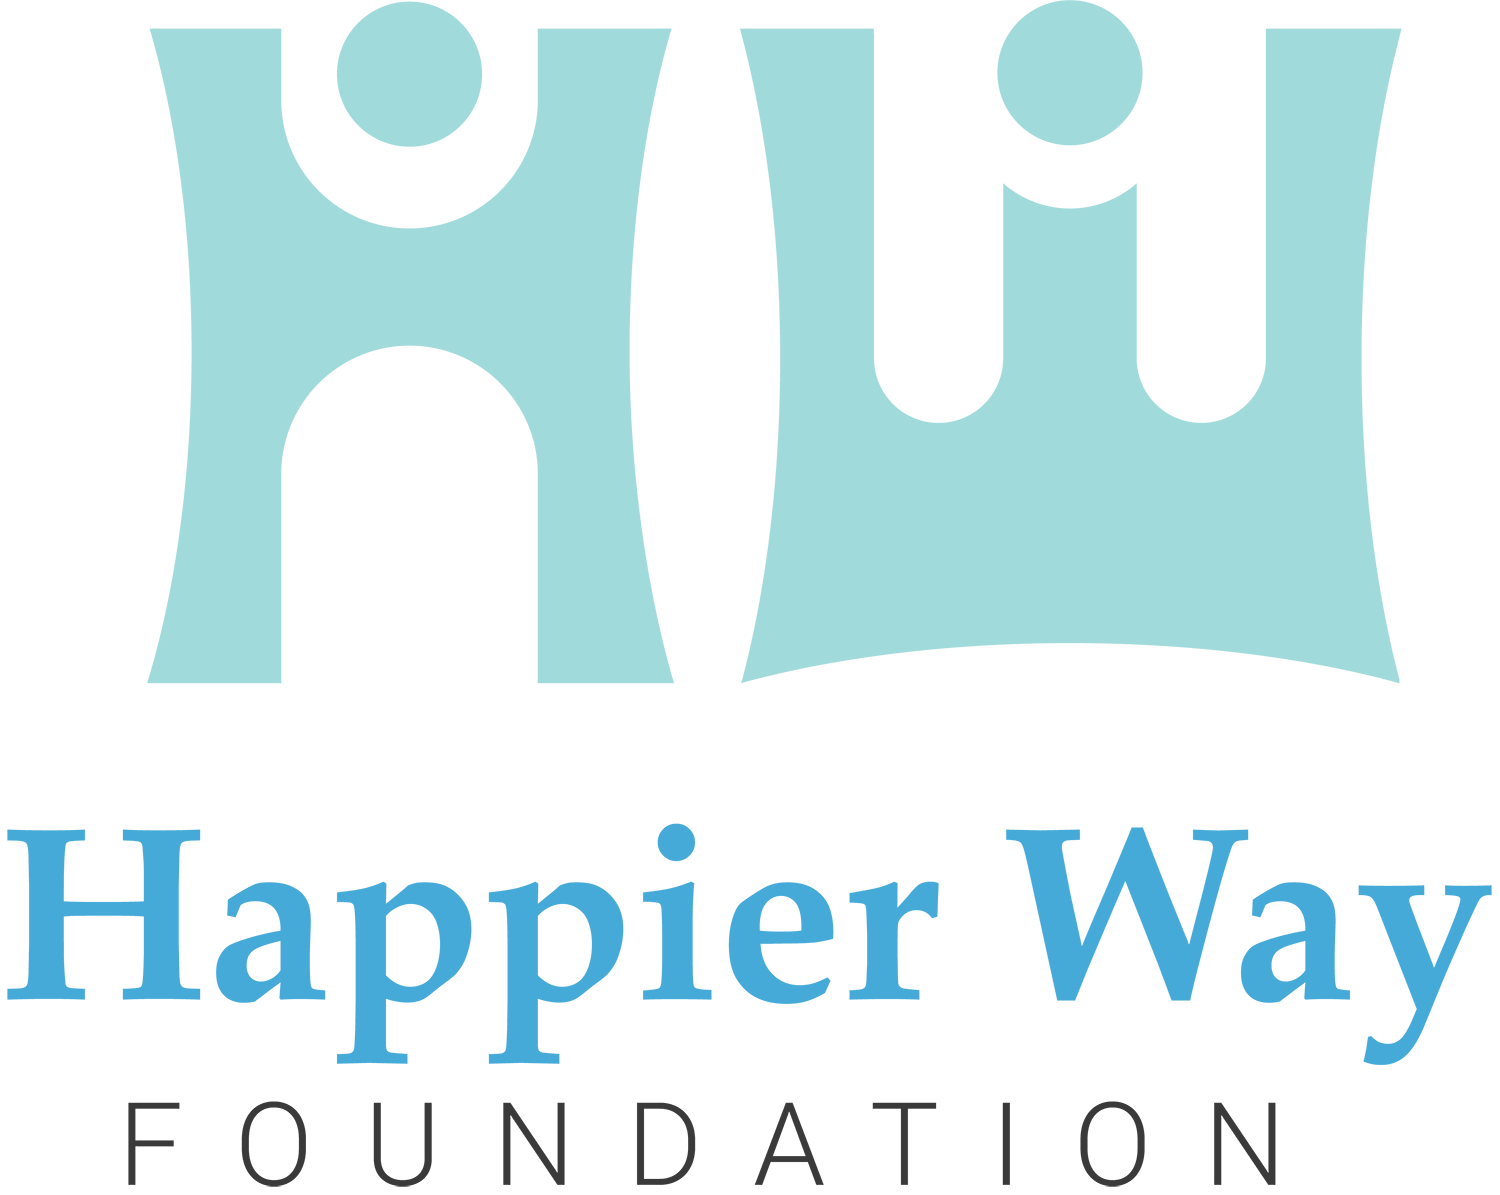 Happier Way Foundation